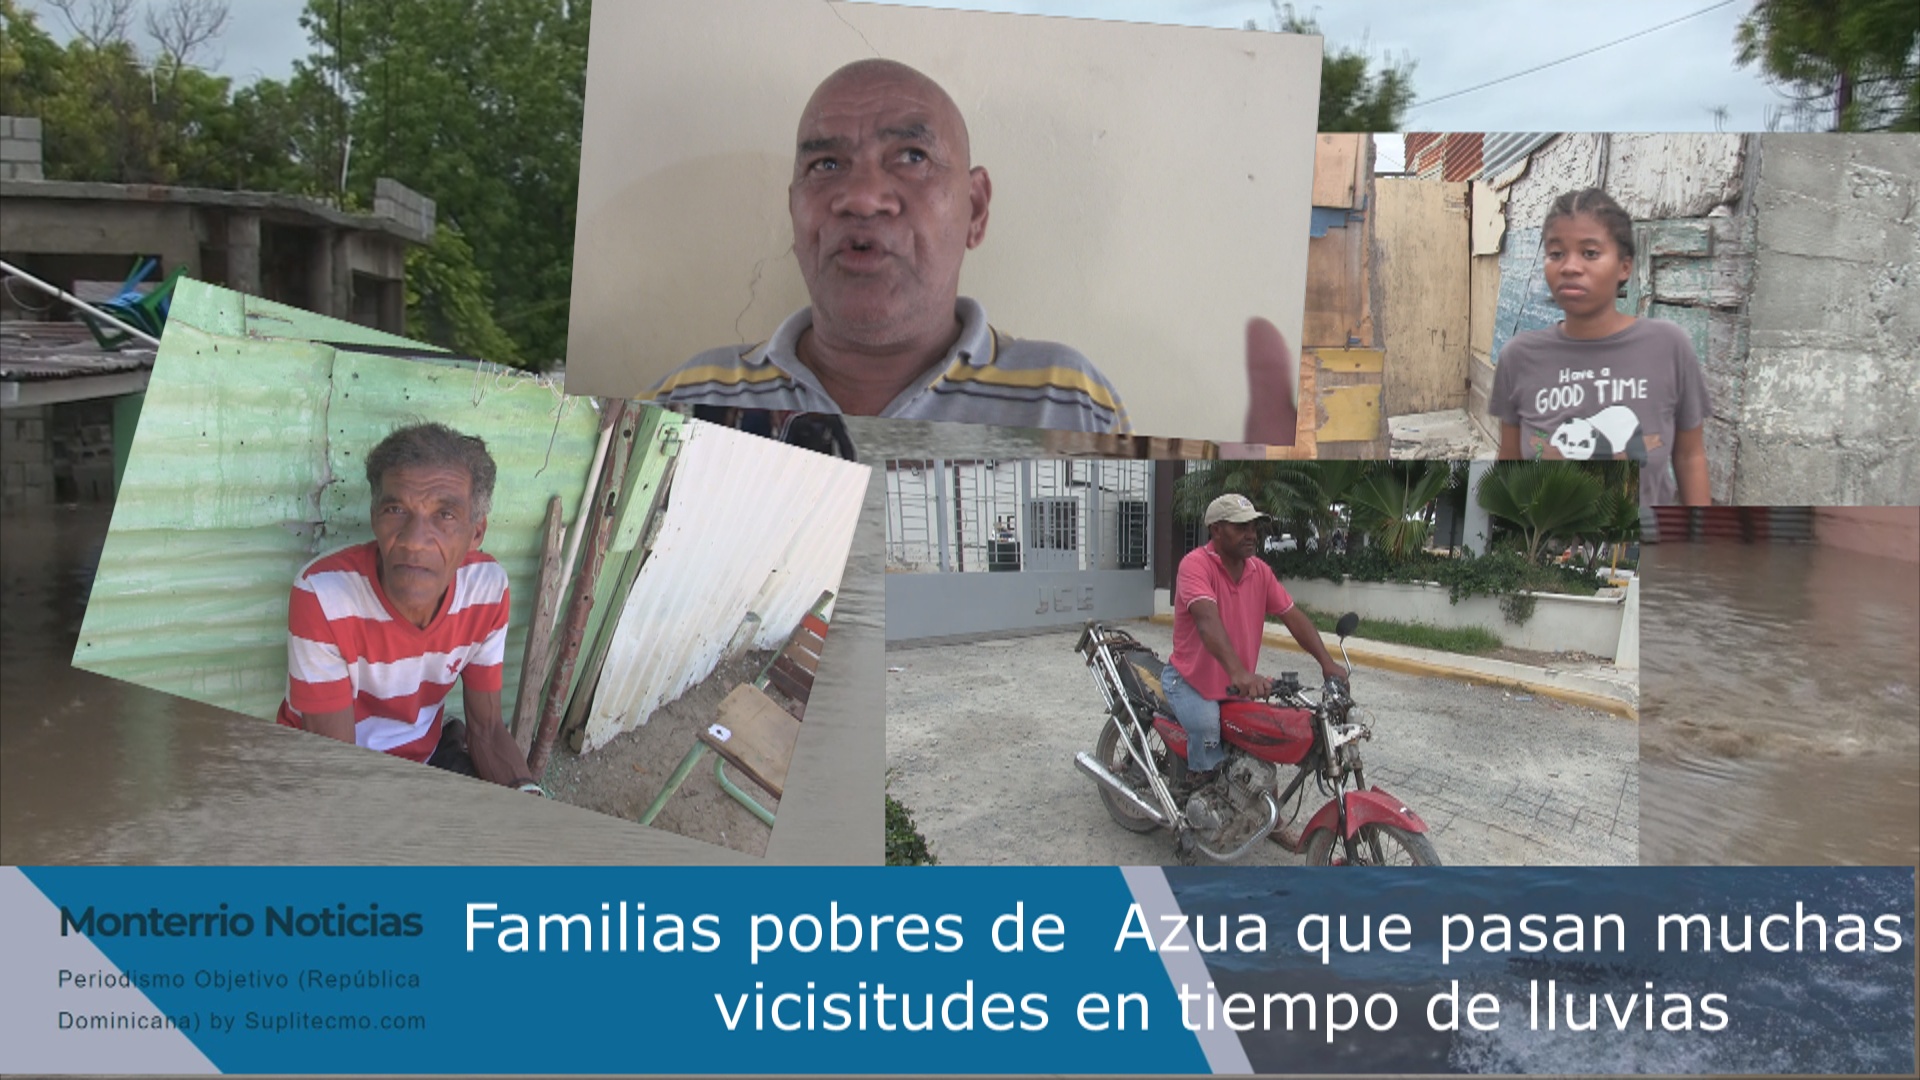 VIDEO: Familias pobres en Azua sufren muchas vicisitudes en temporada de lluvia